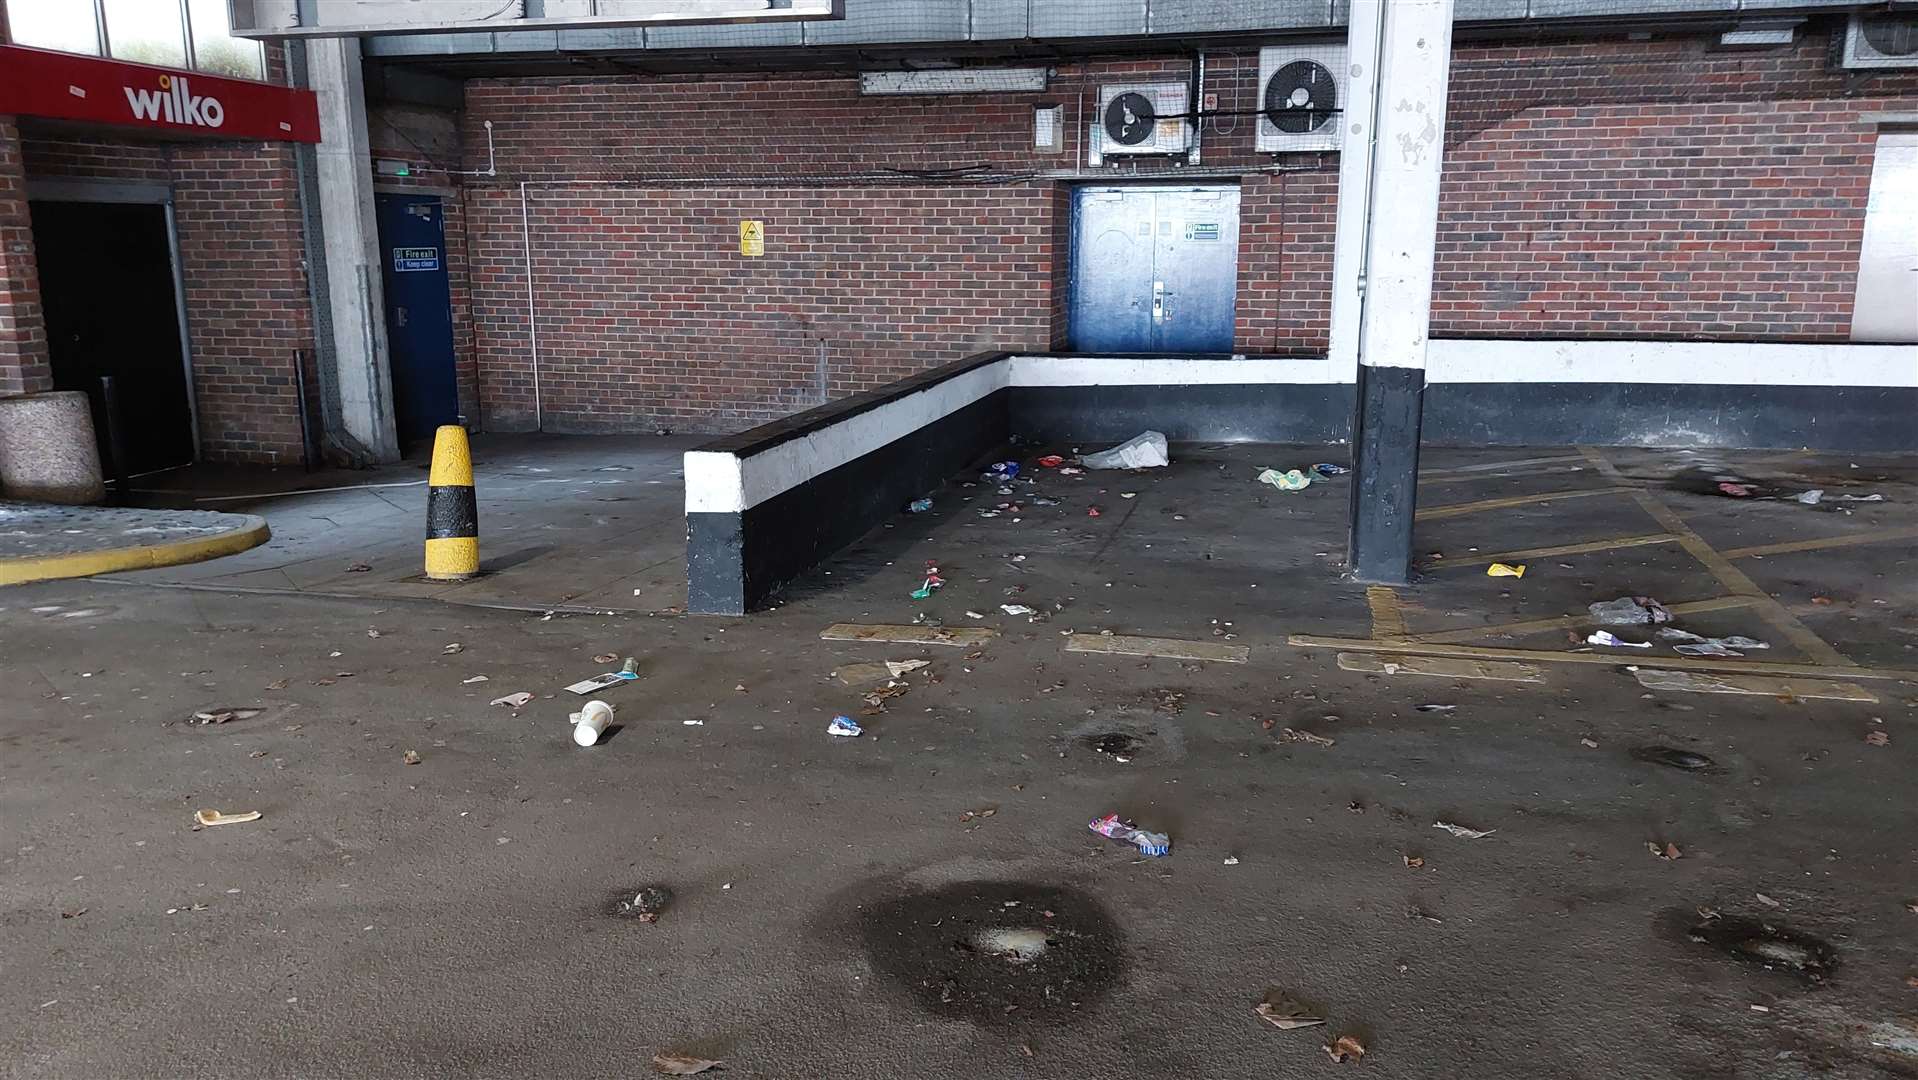 Litter on the car park's ground floor